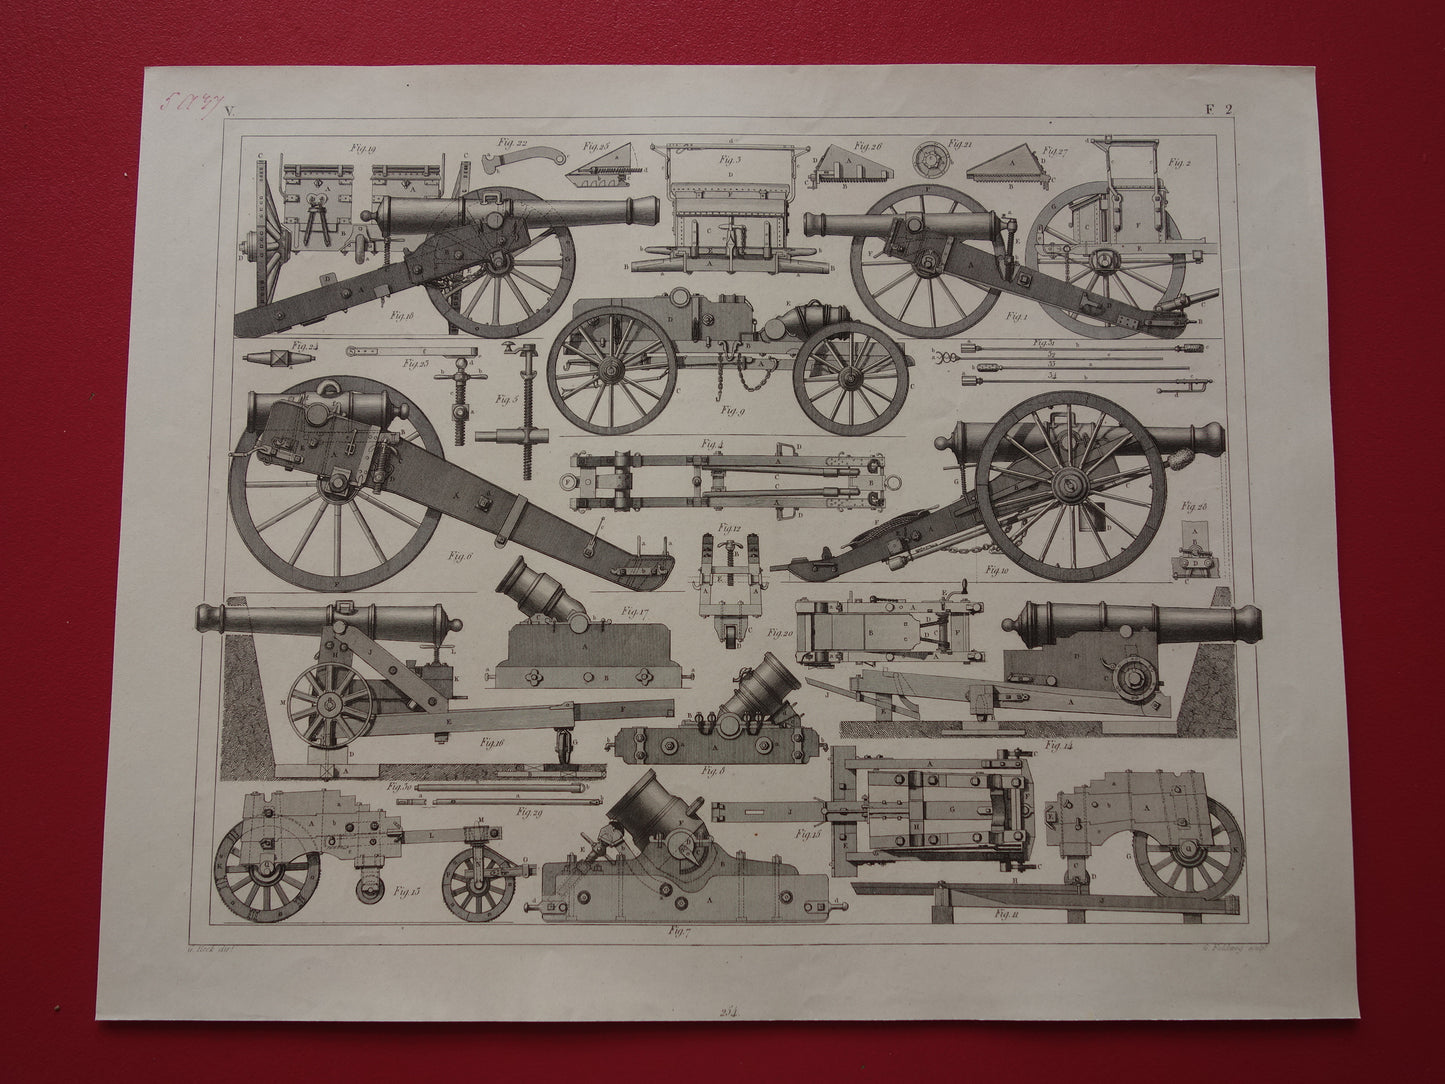 Antieke illustratie ARTILLERIE uit 1849 - 170+ jaar oude prent over kanonnen howitsers - originele vintage militaire print